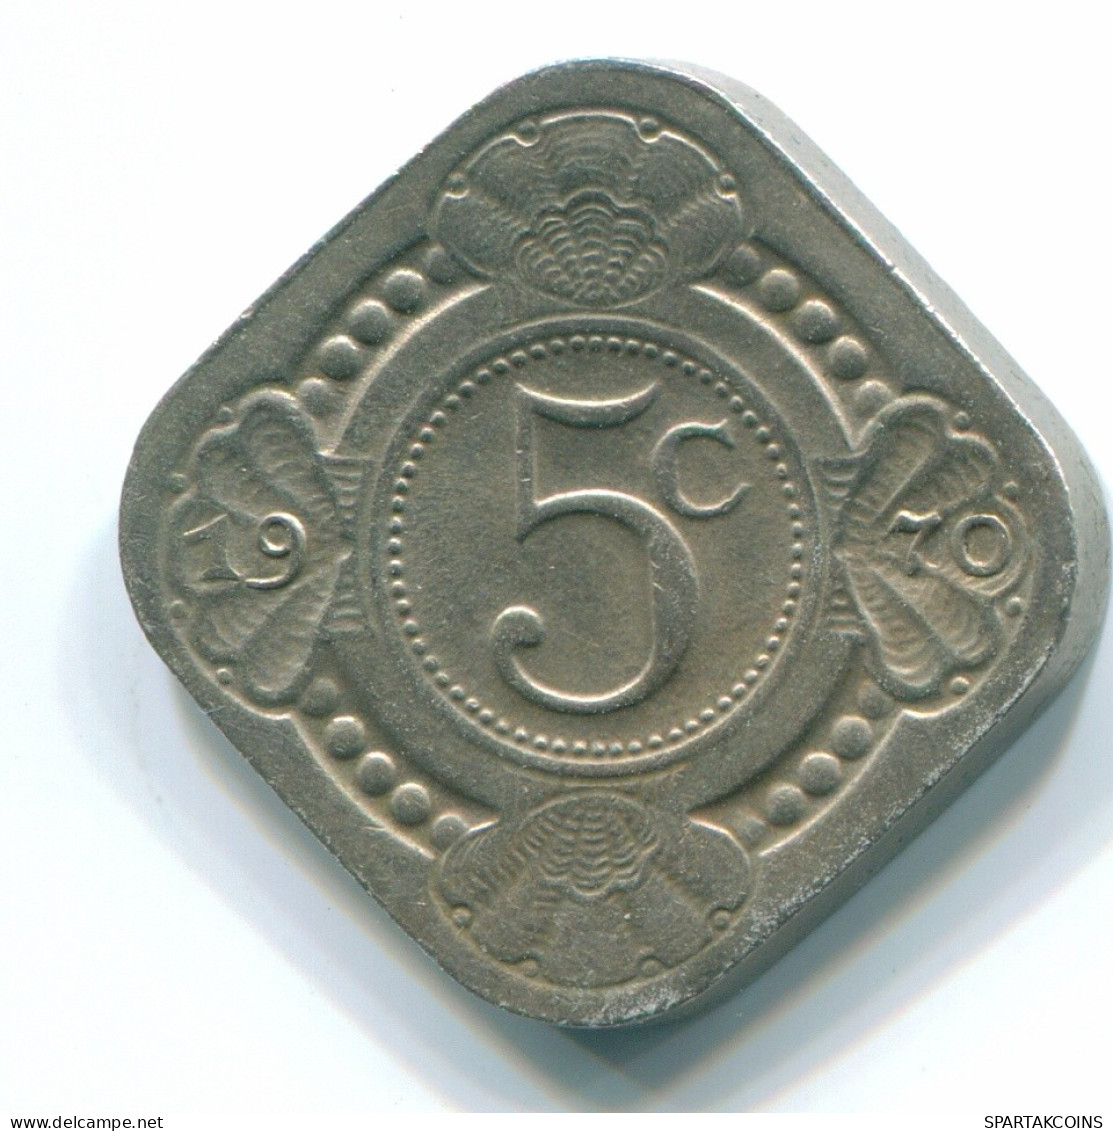 5 CENTS 1970 NETHERLANDS ANTILLES Nickel Colonial Coin #S12501.U.A - Niederländische Antillen